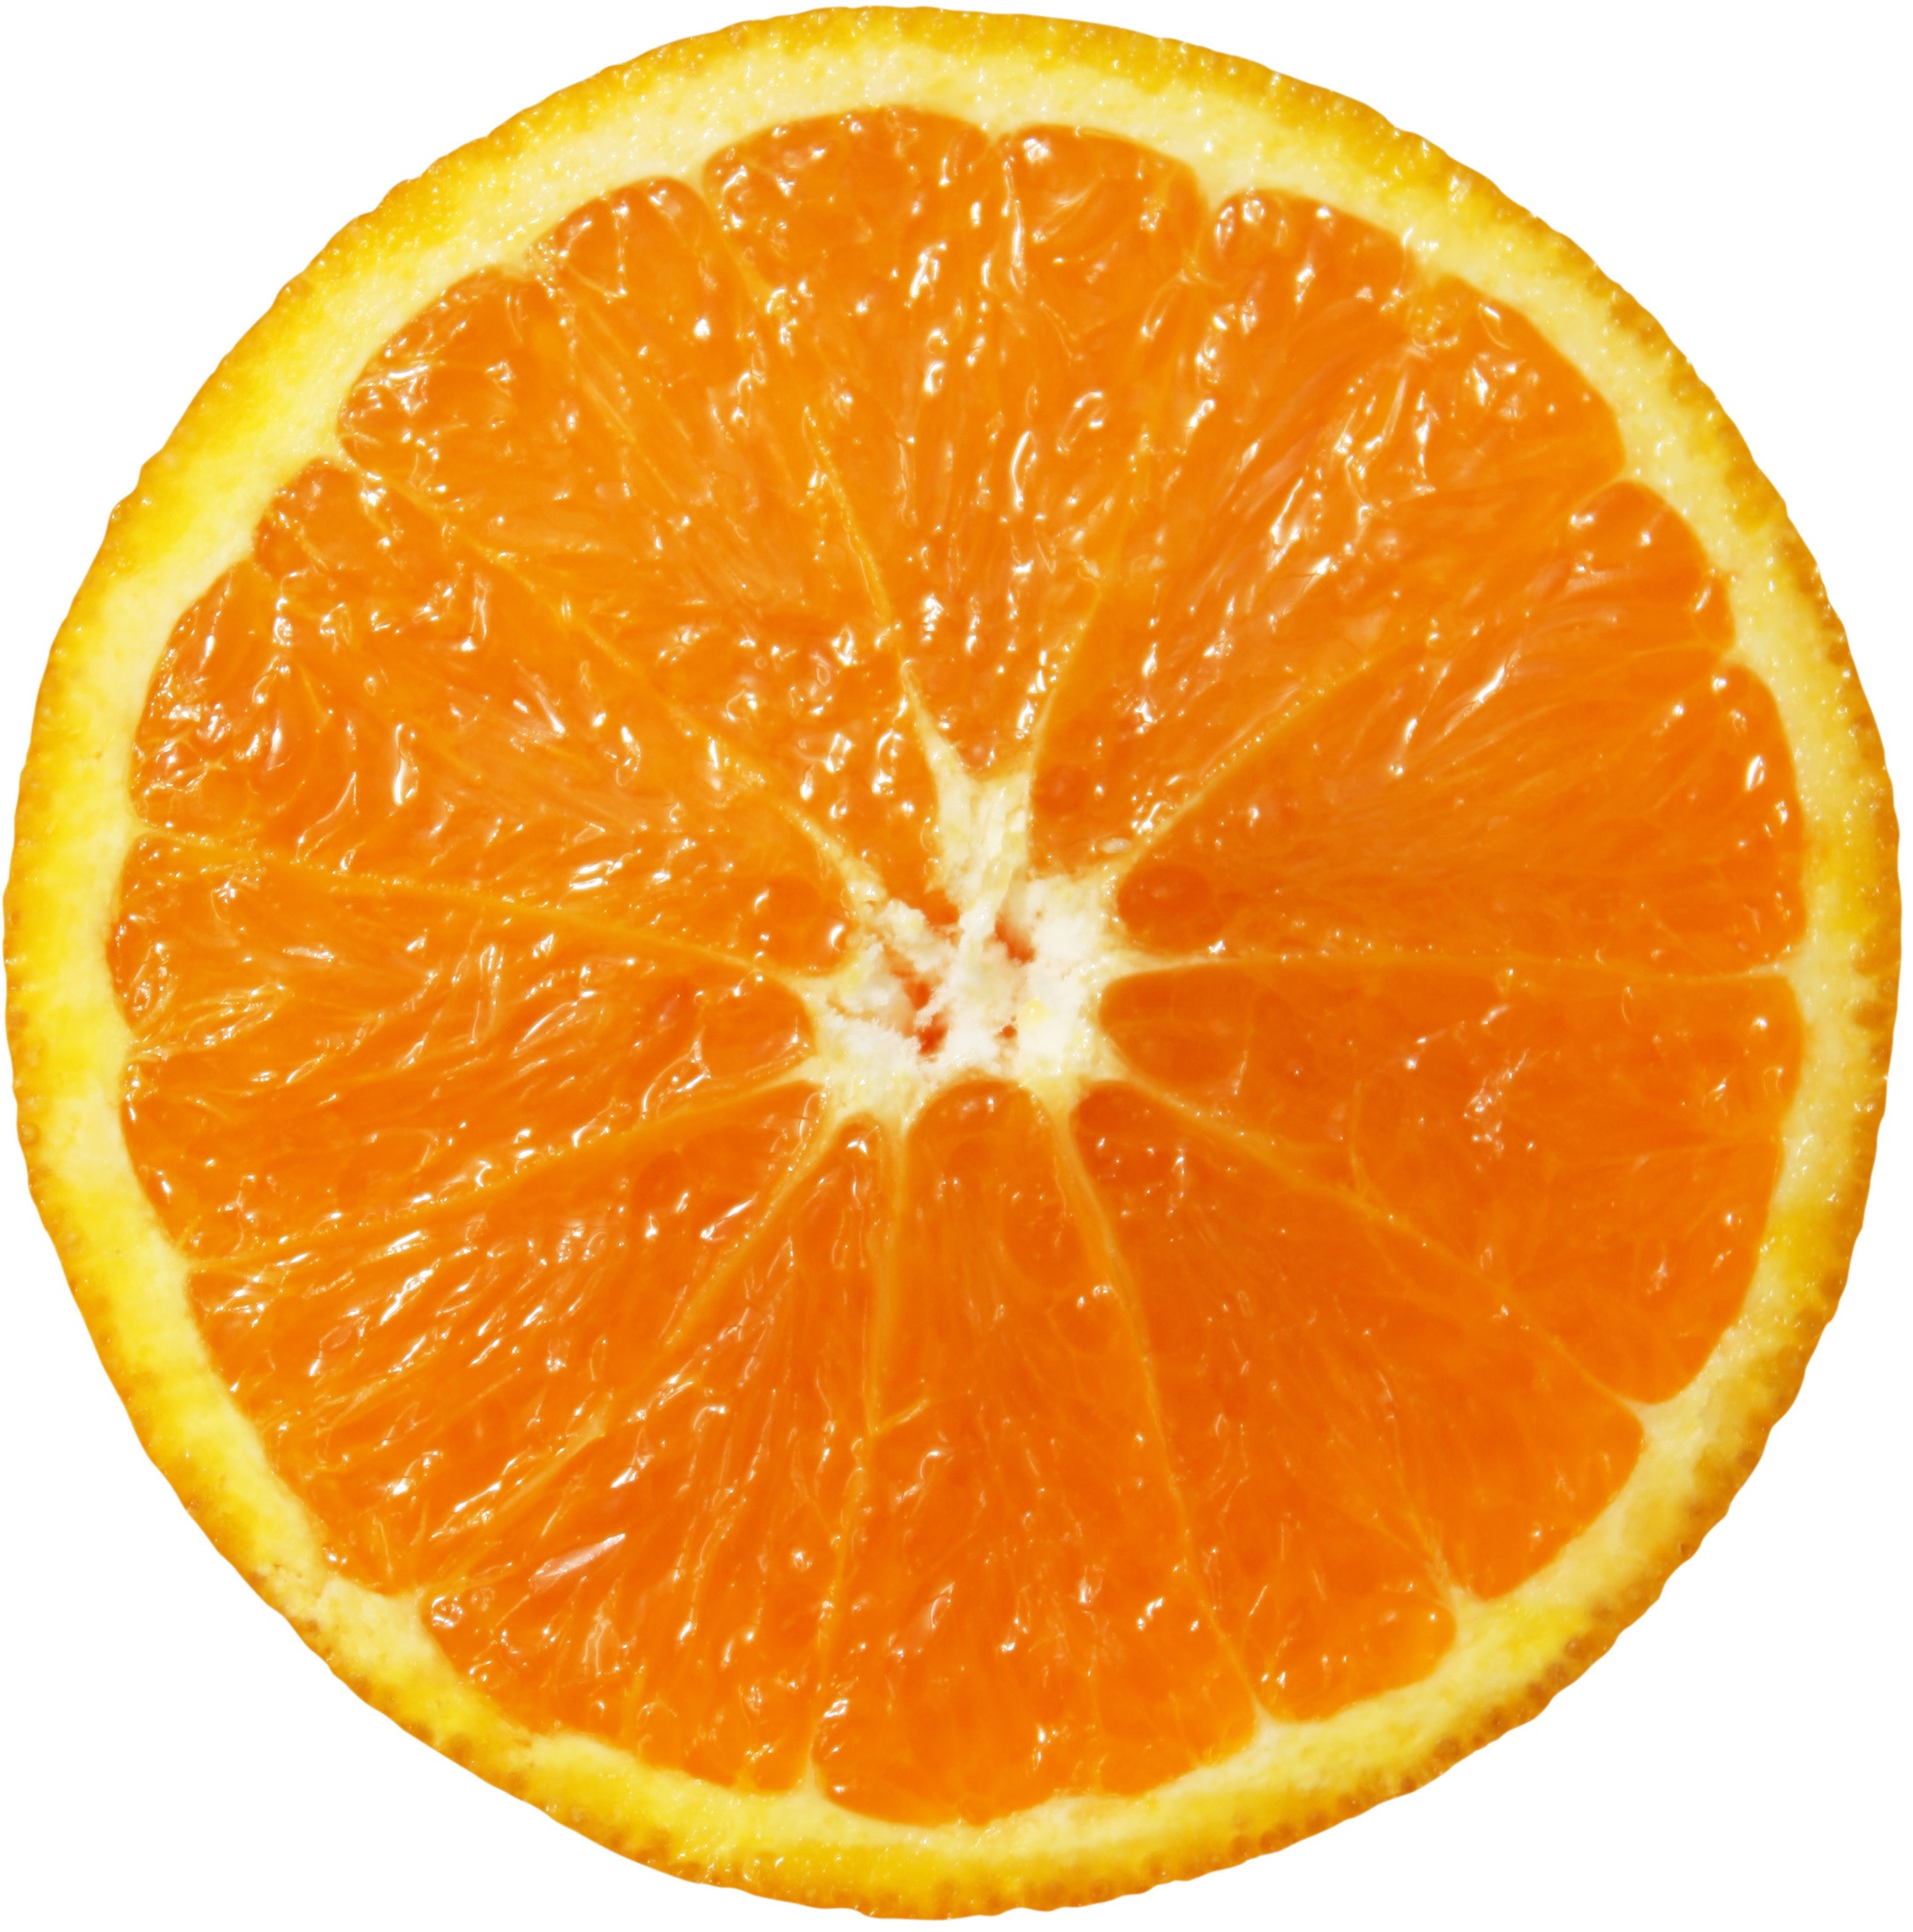 Долька оранжевого апельсина крупным планом